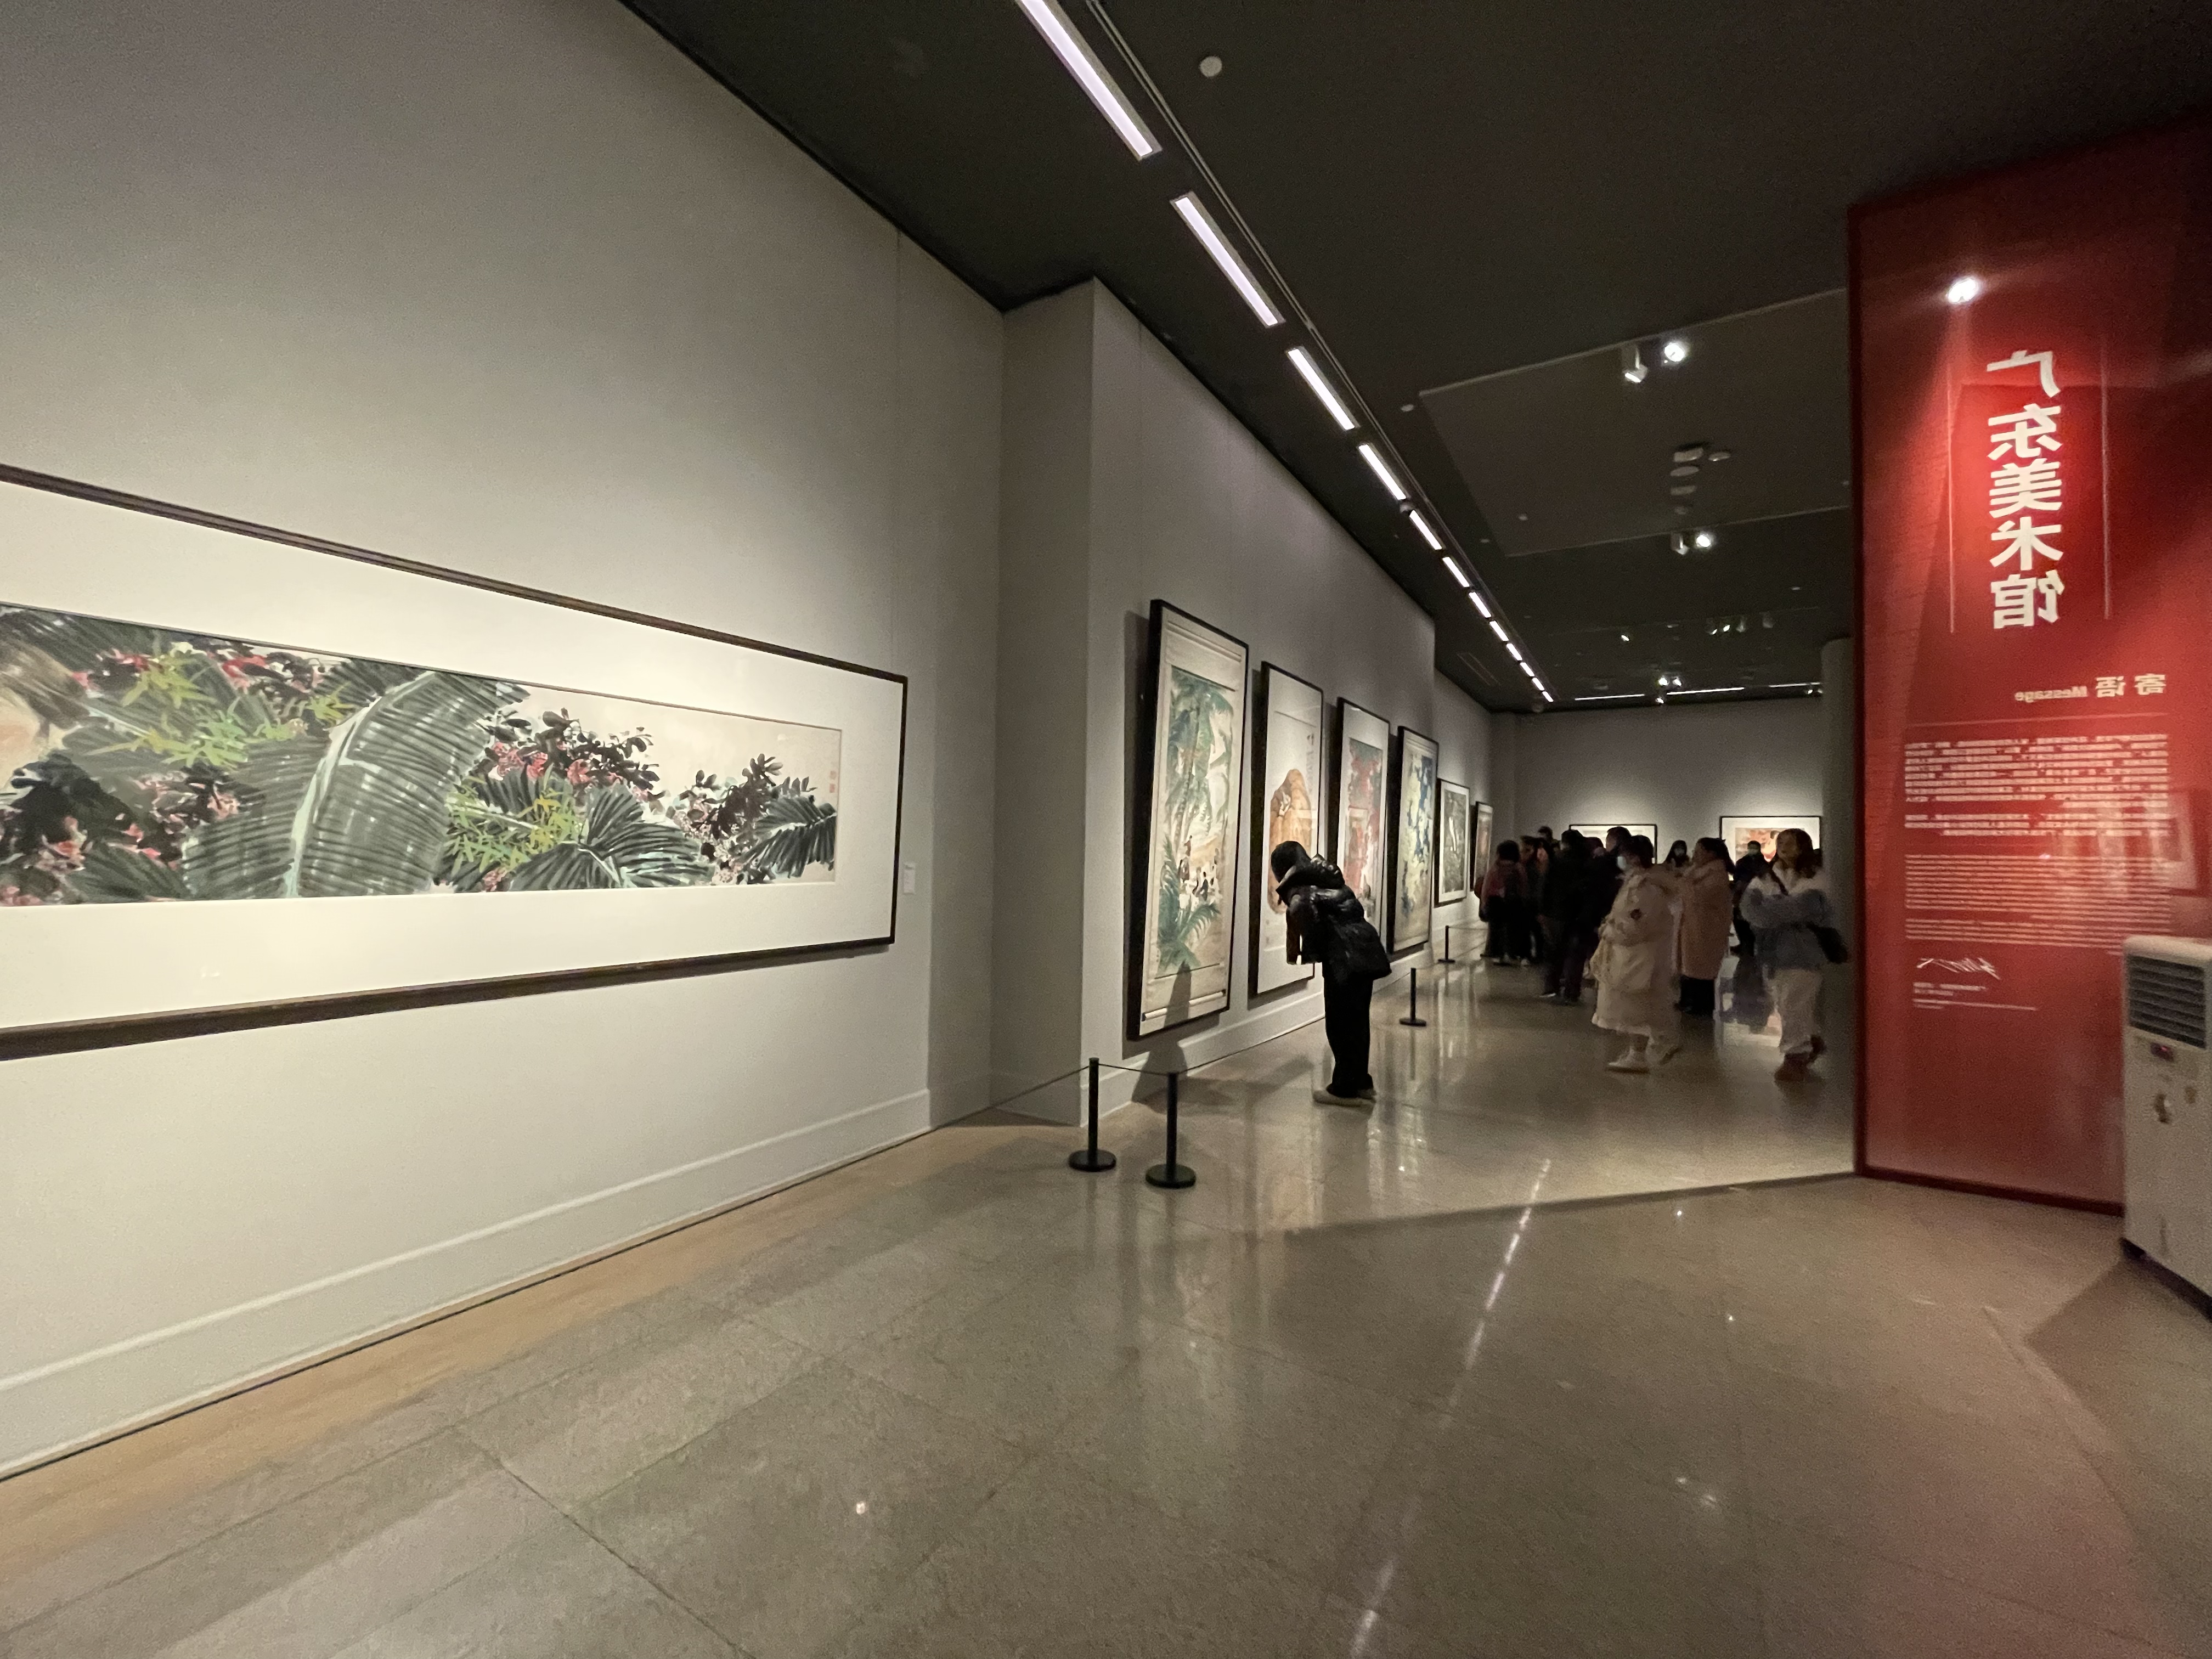 雅昌现场图集美在荟萃一场展览看遍全国十五家美术馆珍藏